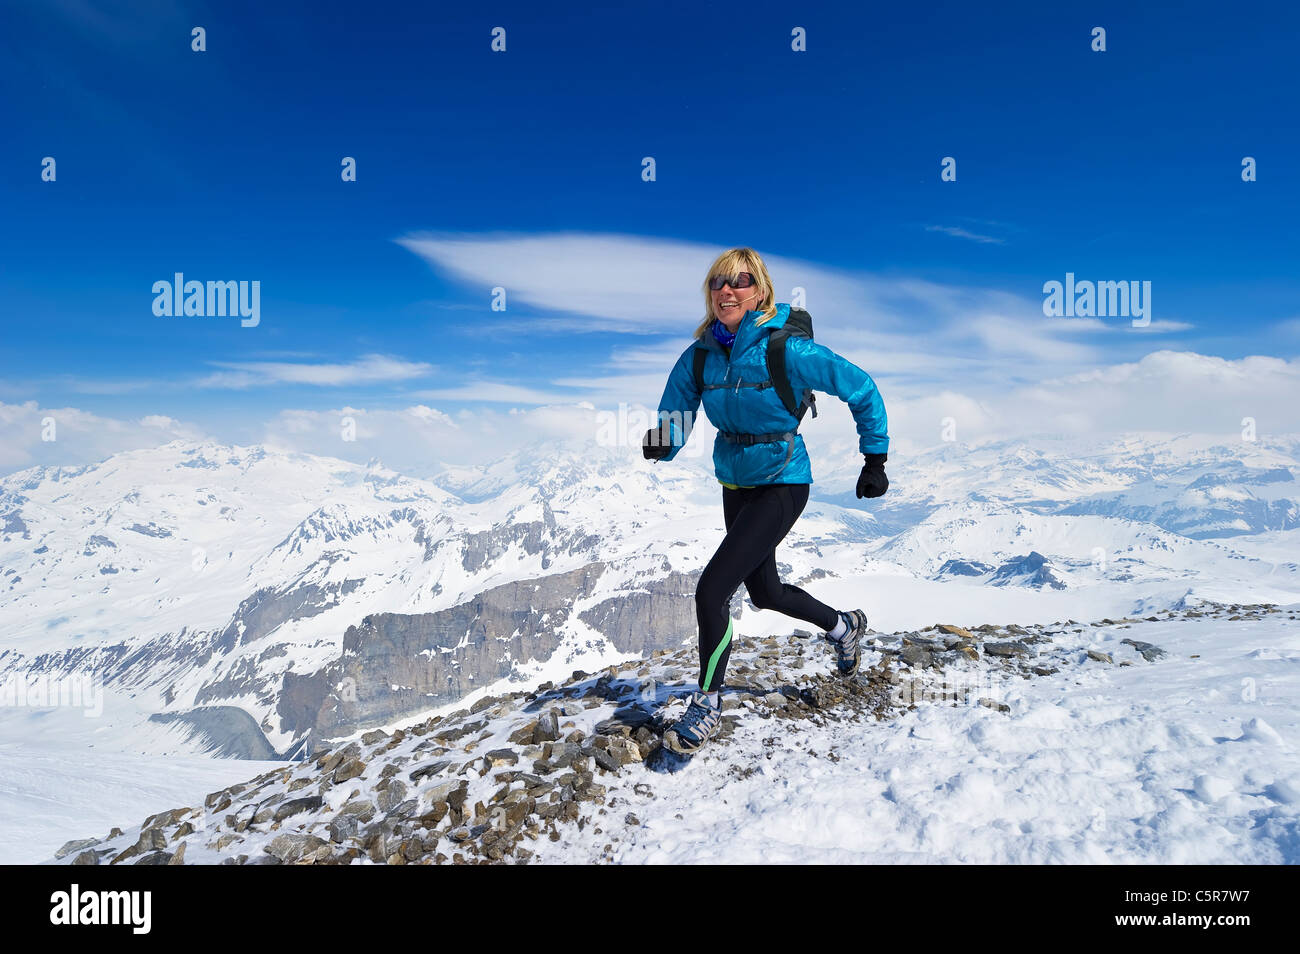 La mujer disfruta de una carrera a través de una cordillera Alpes nevados. Foto de stock